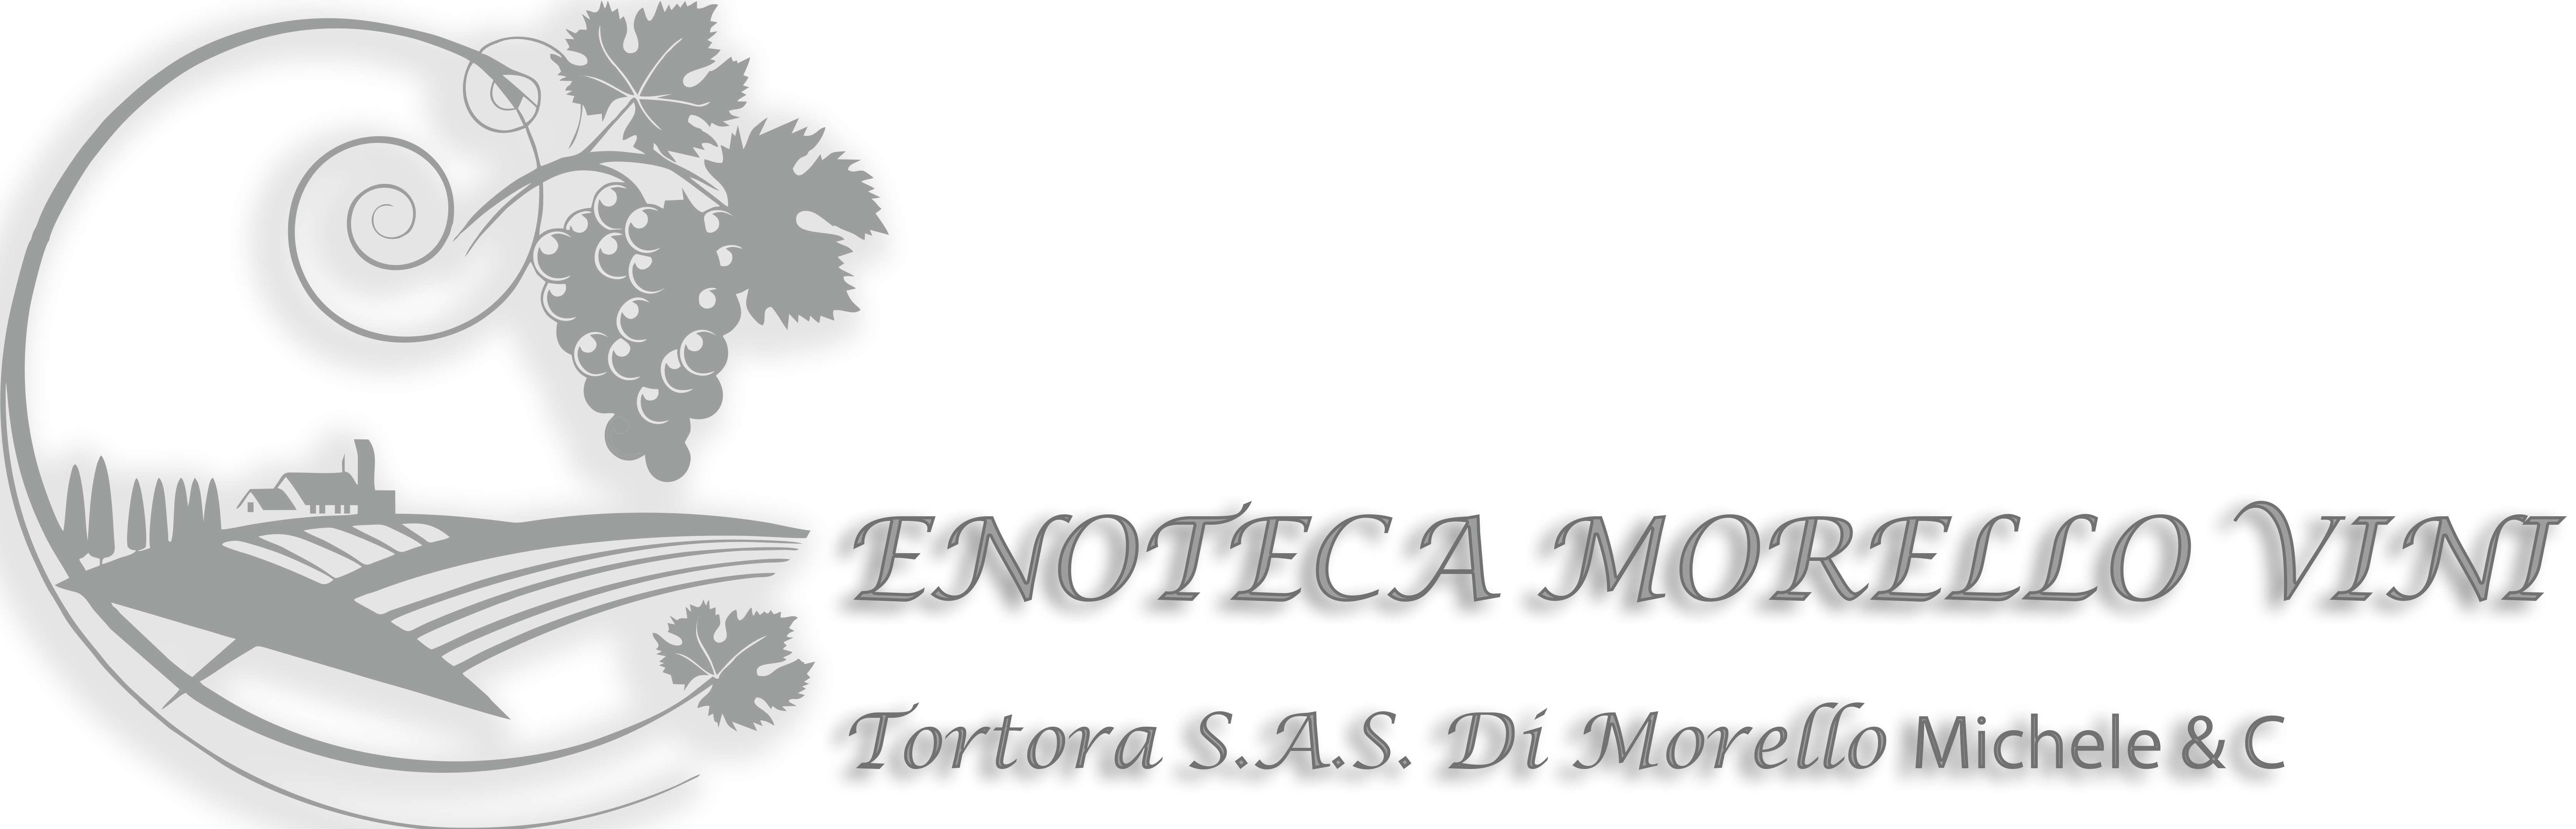 Enoteca Morello Vini